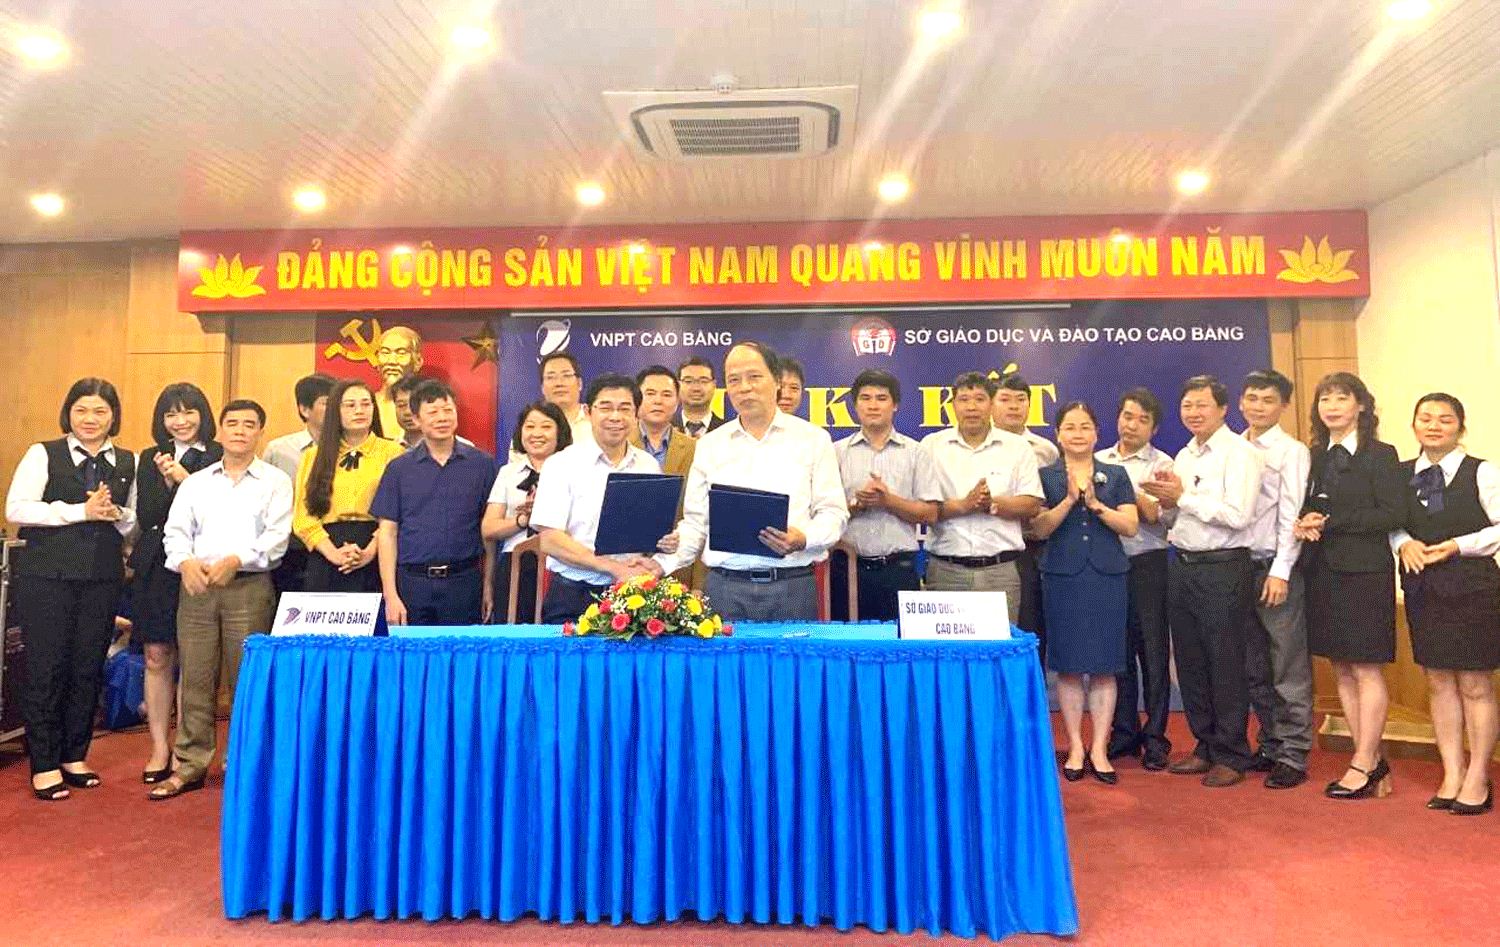 VNPT đồng hành cùng ngành Giáo dục và Đào tạo tỉnh Cao Bằng trong cuộc cách mạng 4.0